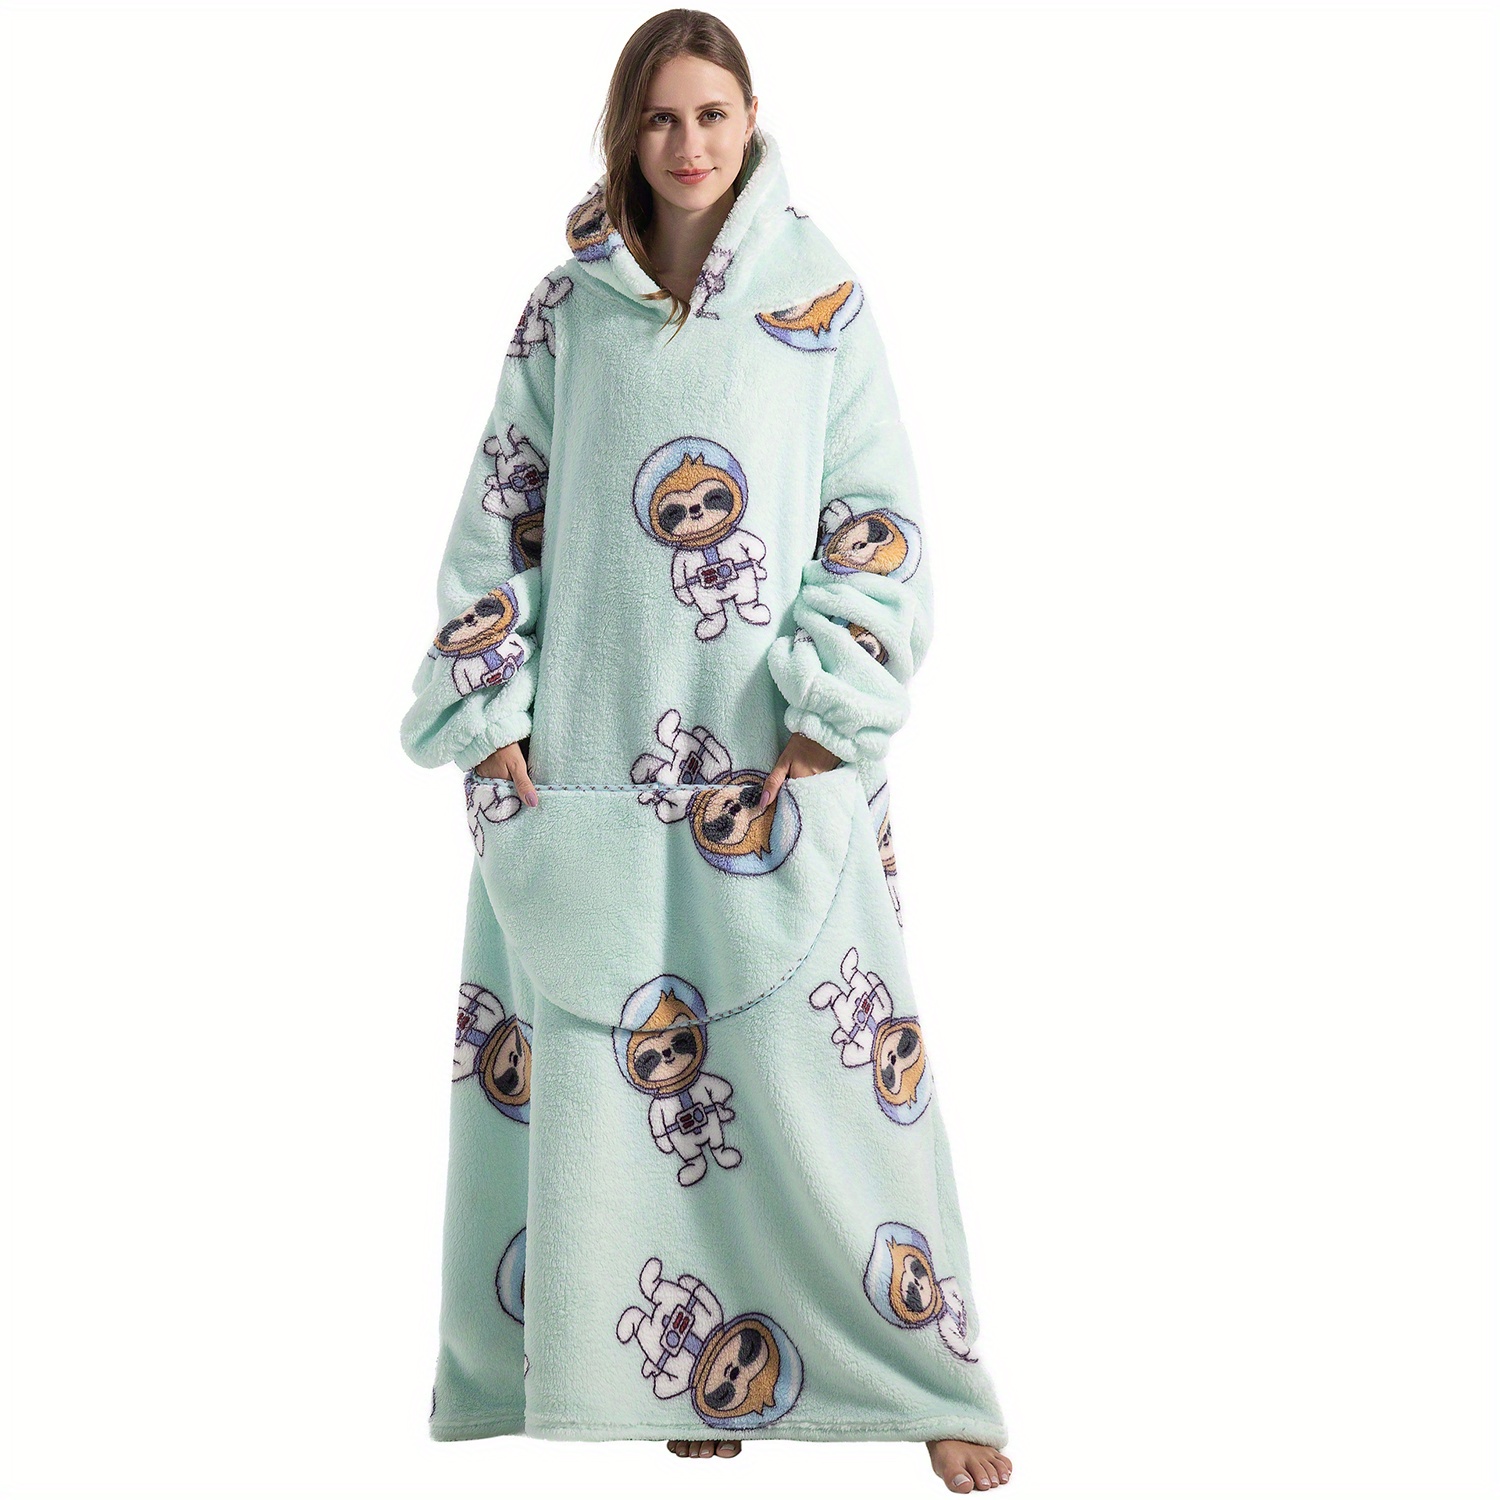 XMLMRY Blanket Hoodie,Wearable Blanket,Sweatshirt Blanket,Oversized  Hoodie,Comfy Blanket Sweatshirt,Sweater Blanket,Sherpa Cozy Giant Hoodie  Blankets